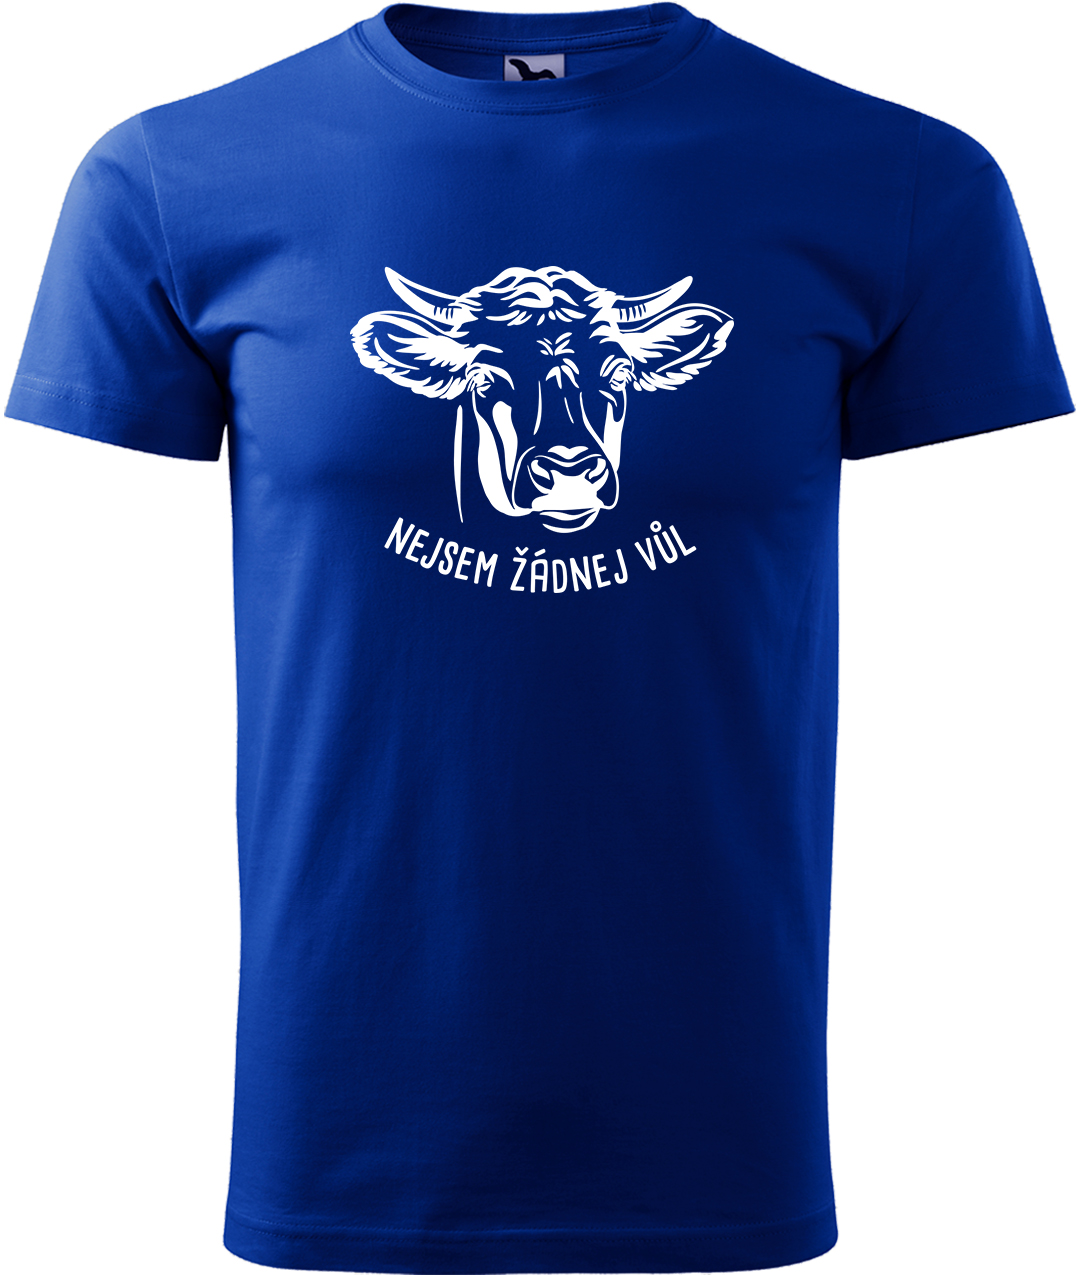 Pánské tričko s krávou - Nejsem žádnej vůl Velikost: L, Barva: Královská modrá (05), Střih: pánský